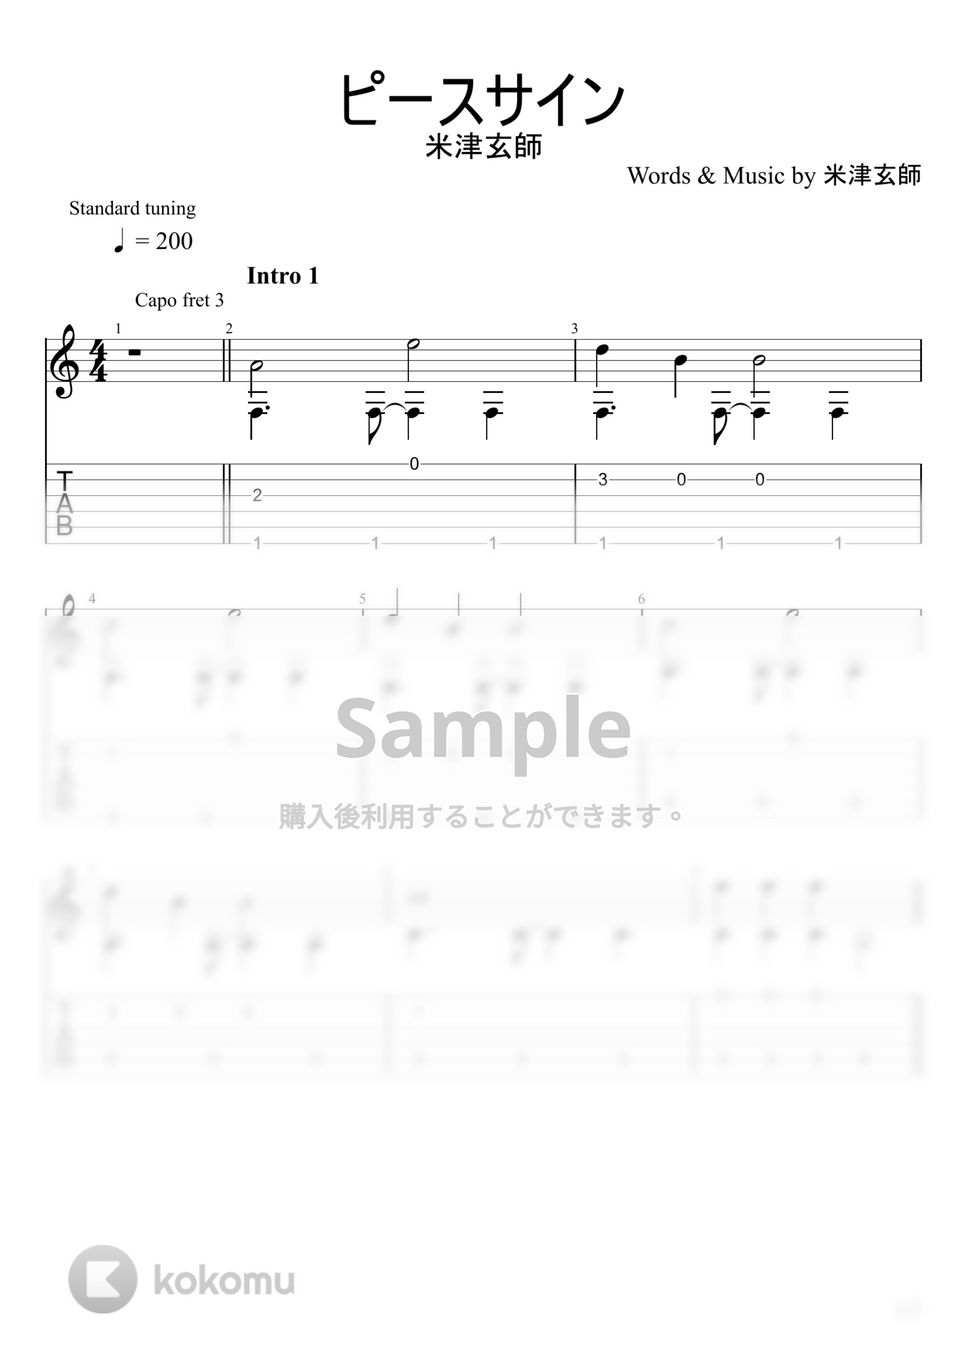 僕のヒーローアカデミア - ピースサイン (ソロギター) by u3danchou